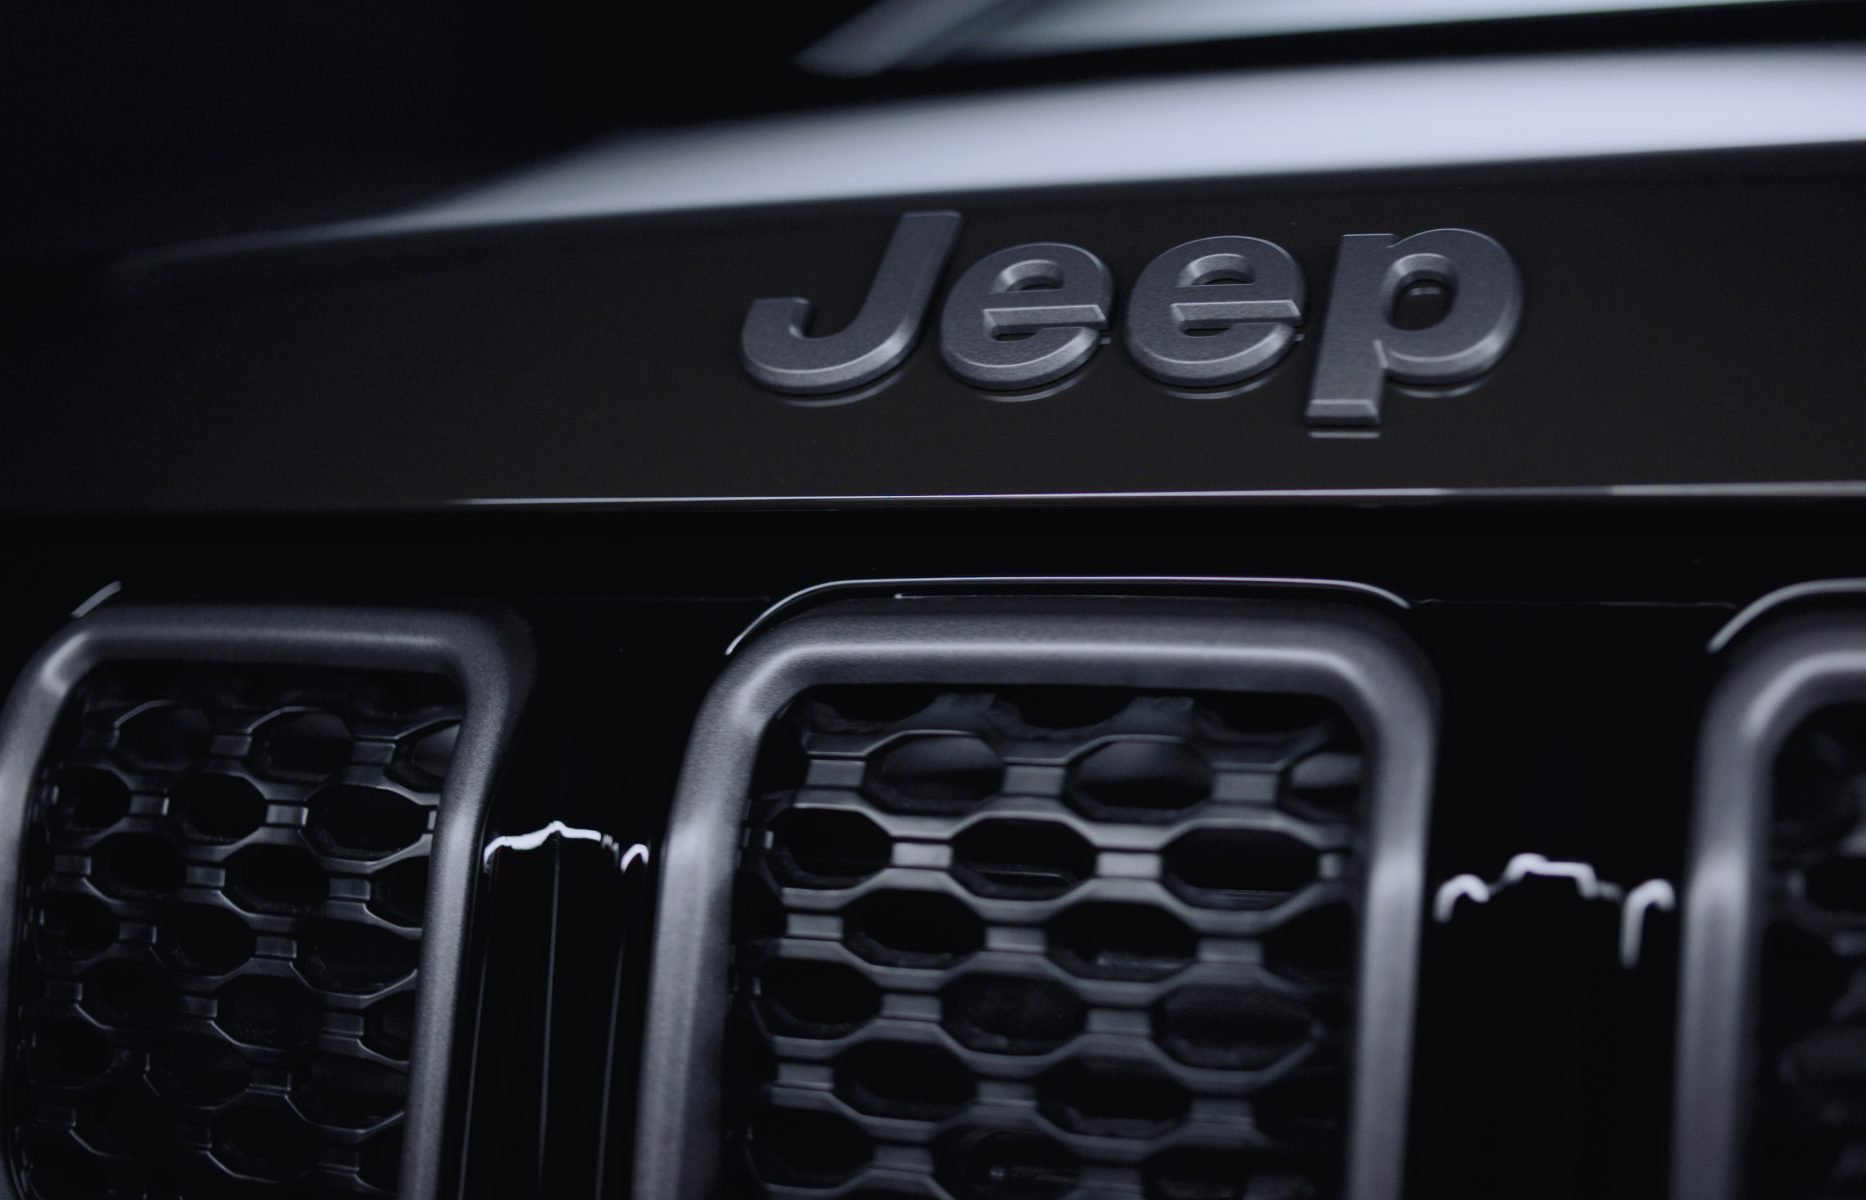 detalhe da grade do novo jeep compass serie especical 80 anos